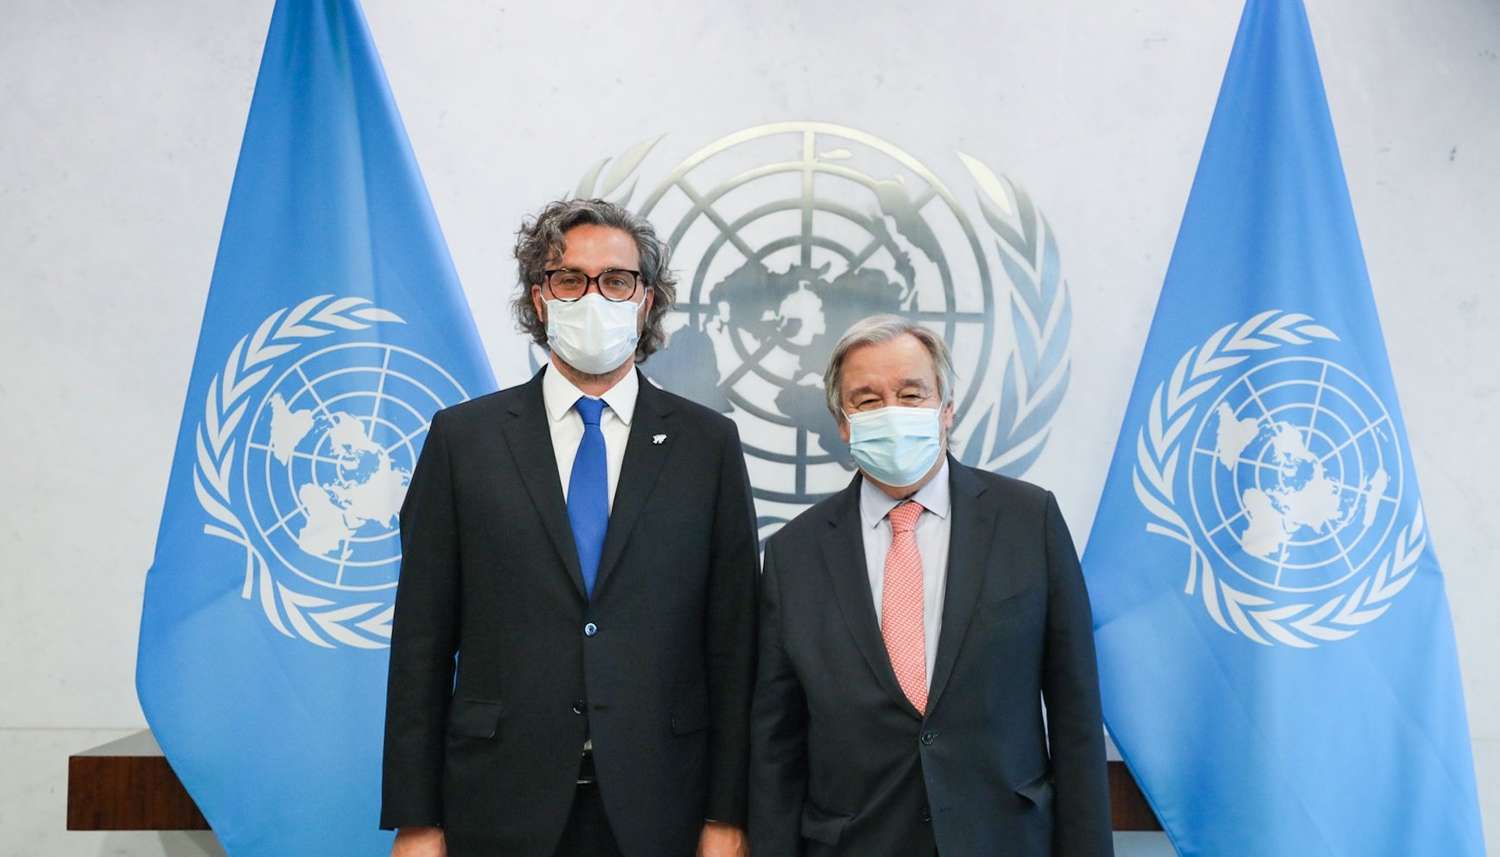 Cafiero reclamó en la ONU la intervención de Guterres para retomar las negociaciones por las Islas Malvinas